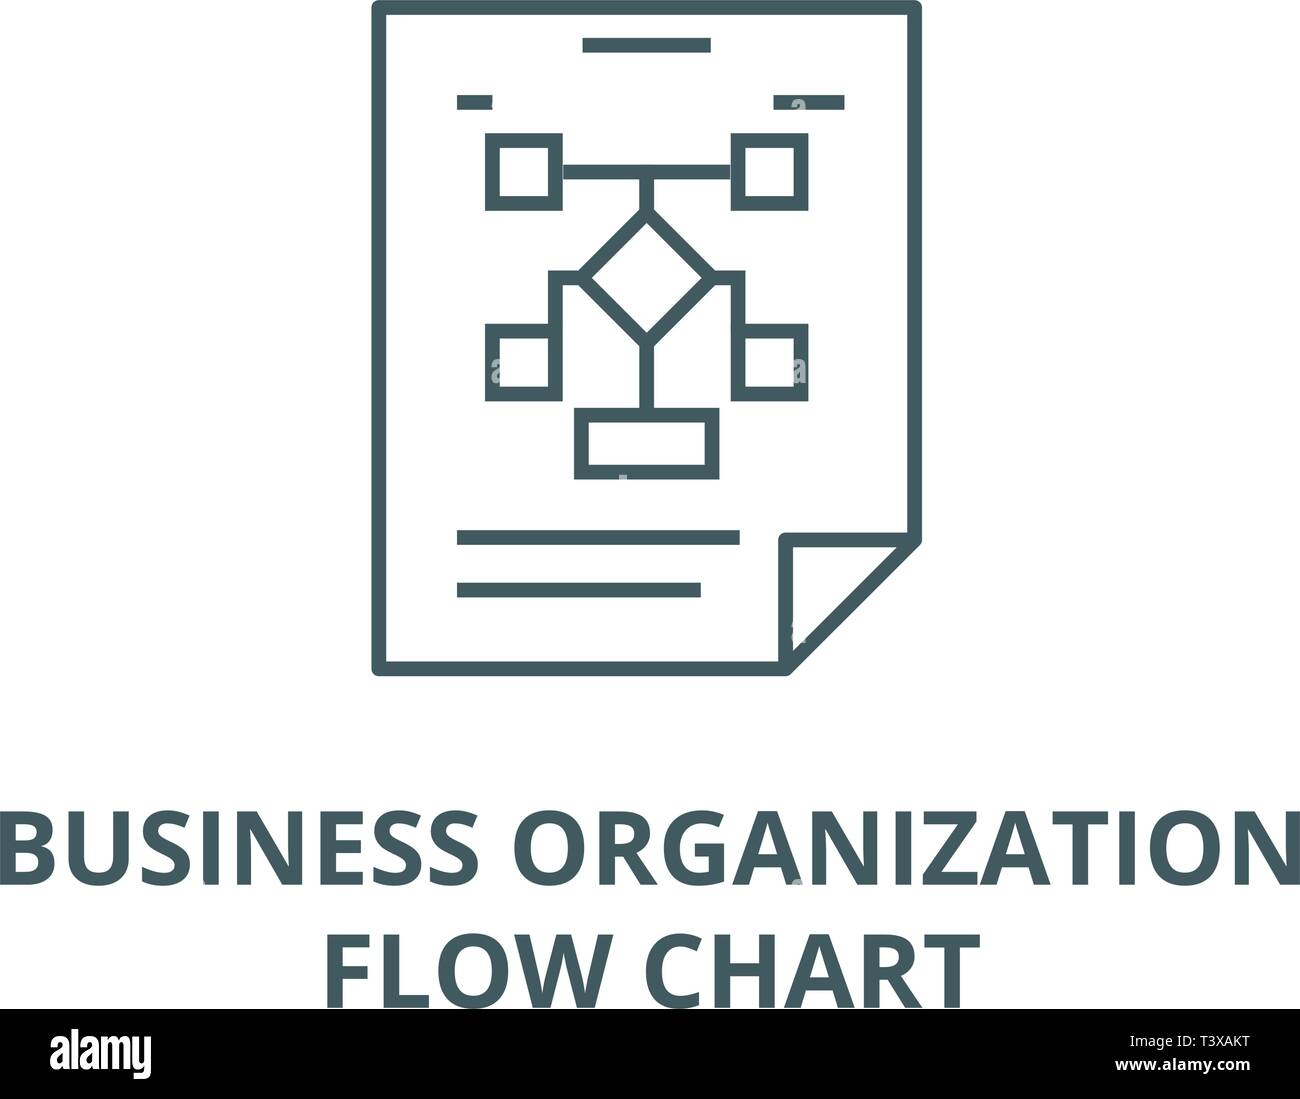 Business Organization Flow Chart